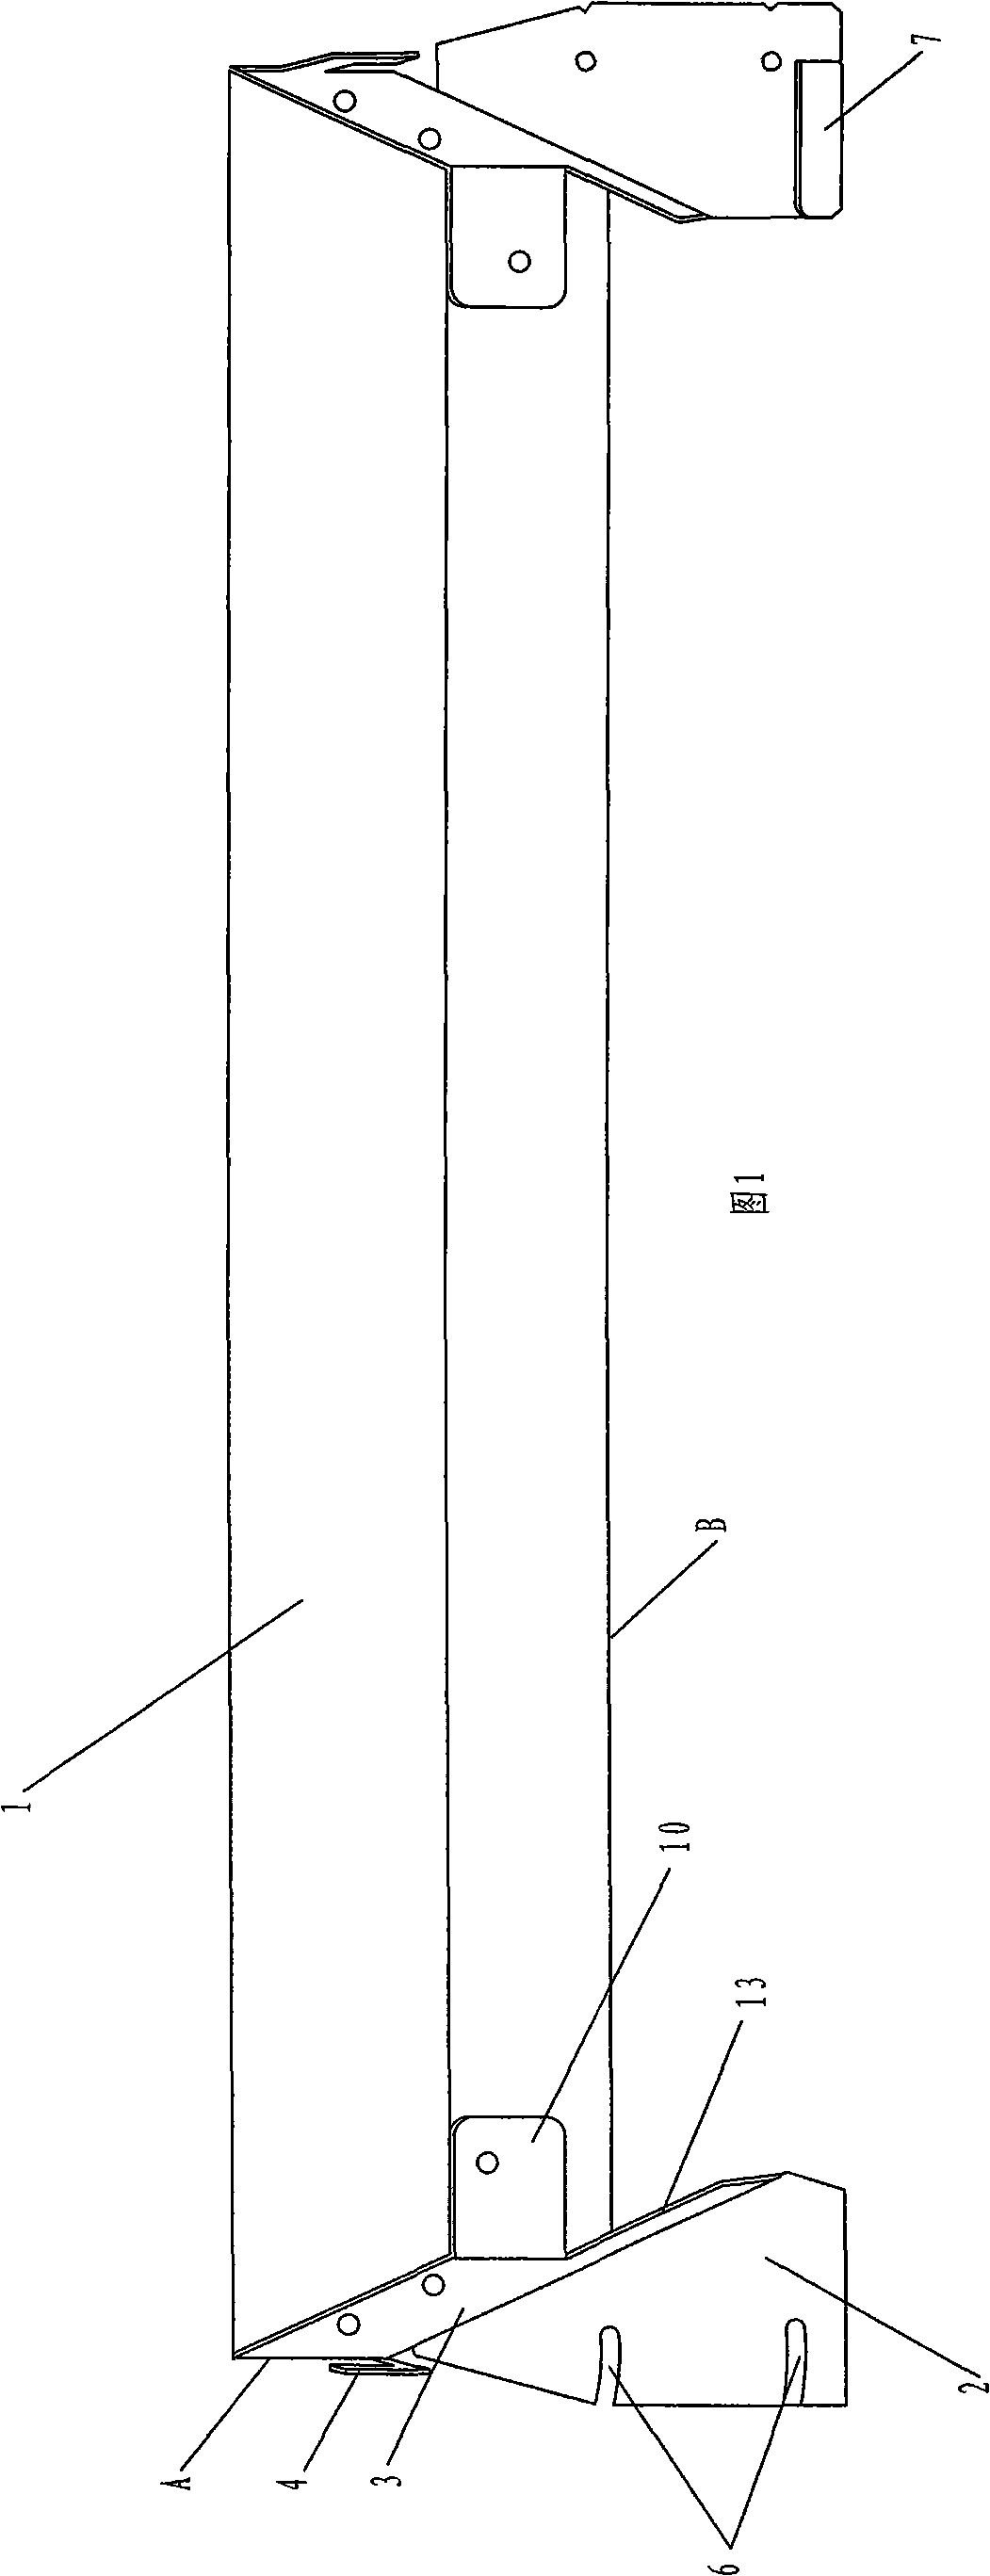 Side forms for paving asphalt concrete pavement